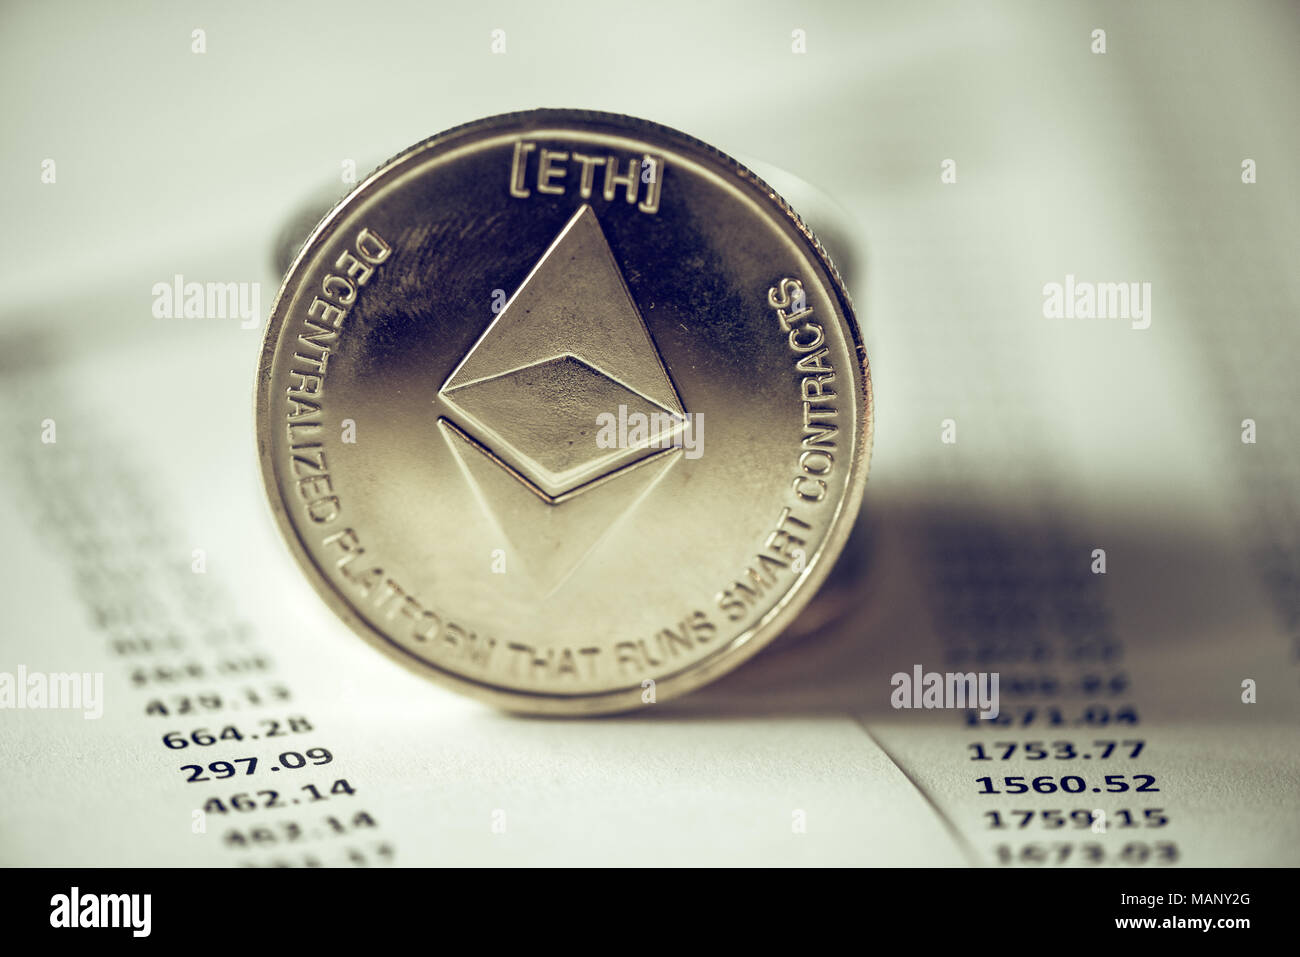 Ethereum cryptocurrency, tecnologia blockchain moneta decentralizzata coin, immagine concettuale con il fuoco selettivo Foto Stock